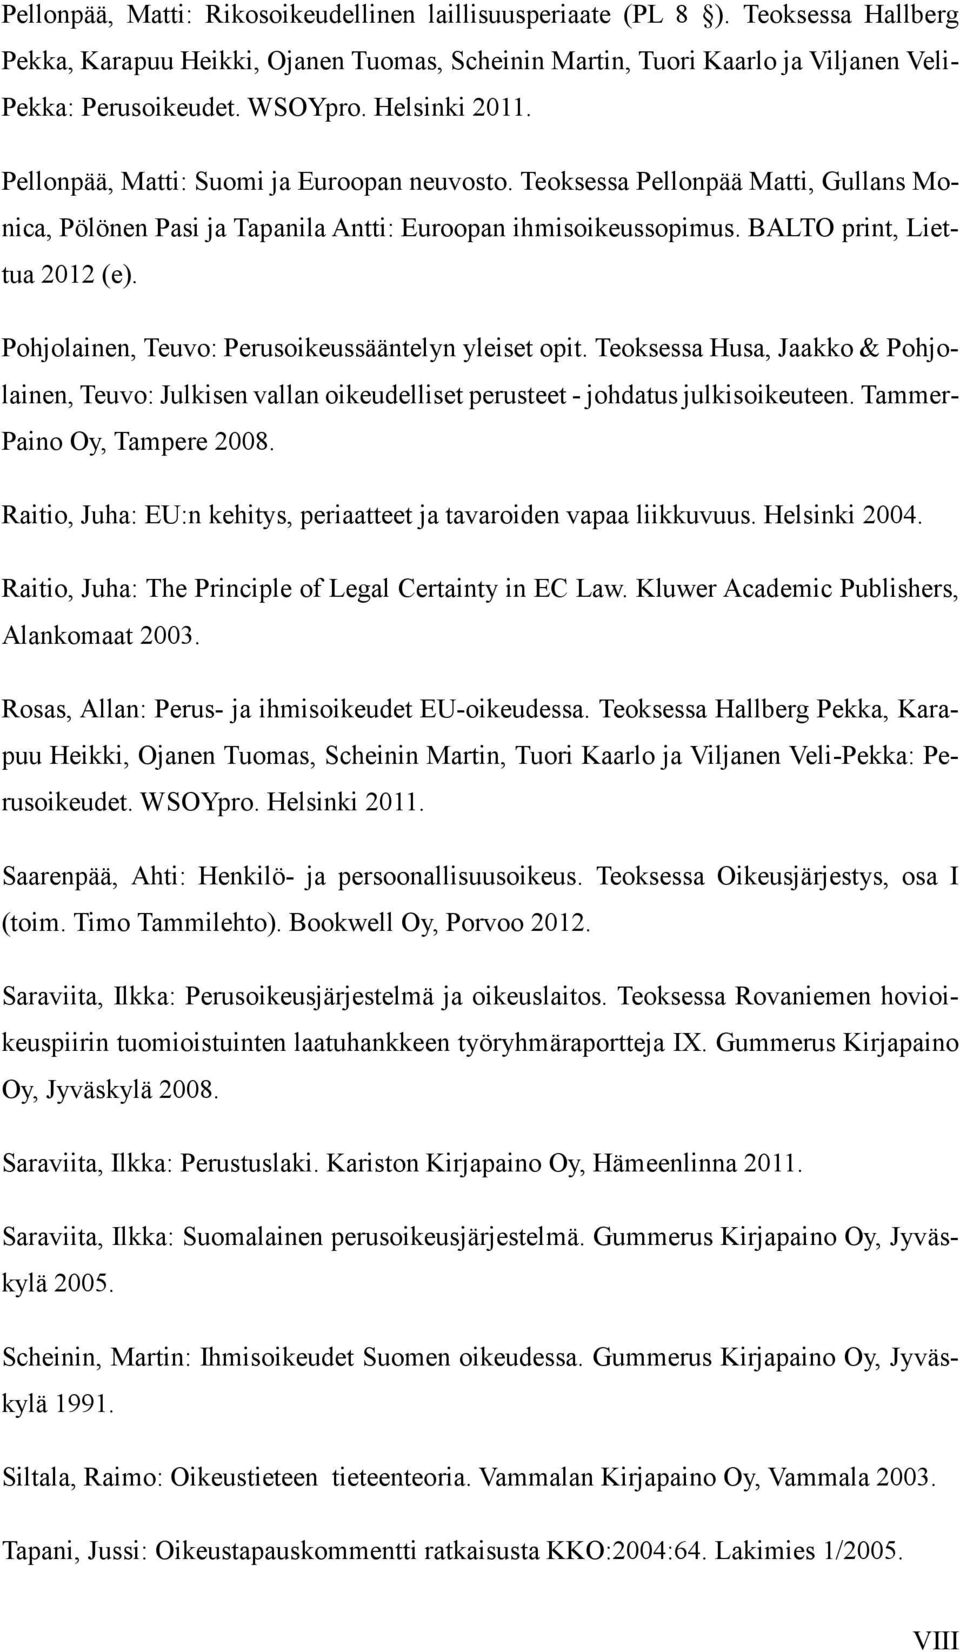 Pohjolainen, Teuvo: Perusoikeussääntelyn yleiset opit. Teoksessa Husa, Jaakko & Pohjolainen, Teuvo: Julkisen vallan oikeudelliset perusteet - johdatus julkisoikeuteen. Tammer- Paino Oy, Tampere 2008.